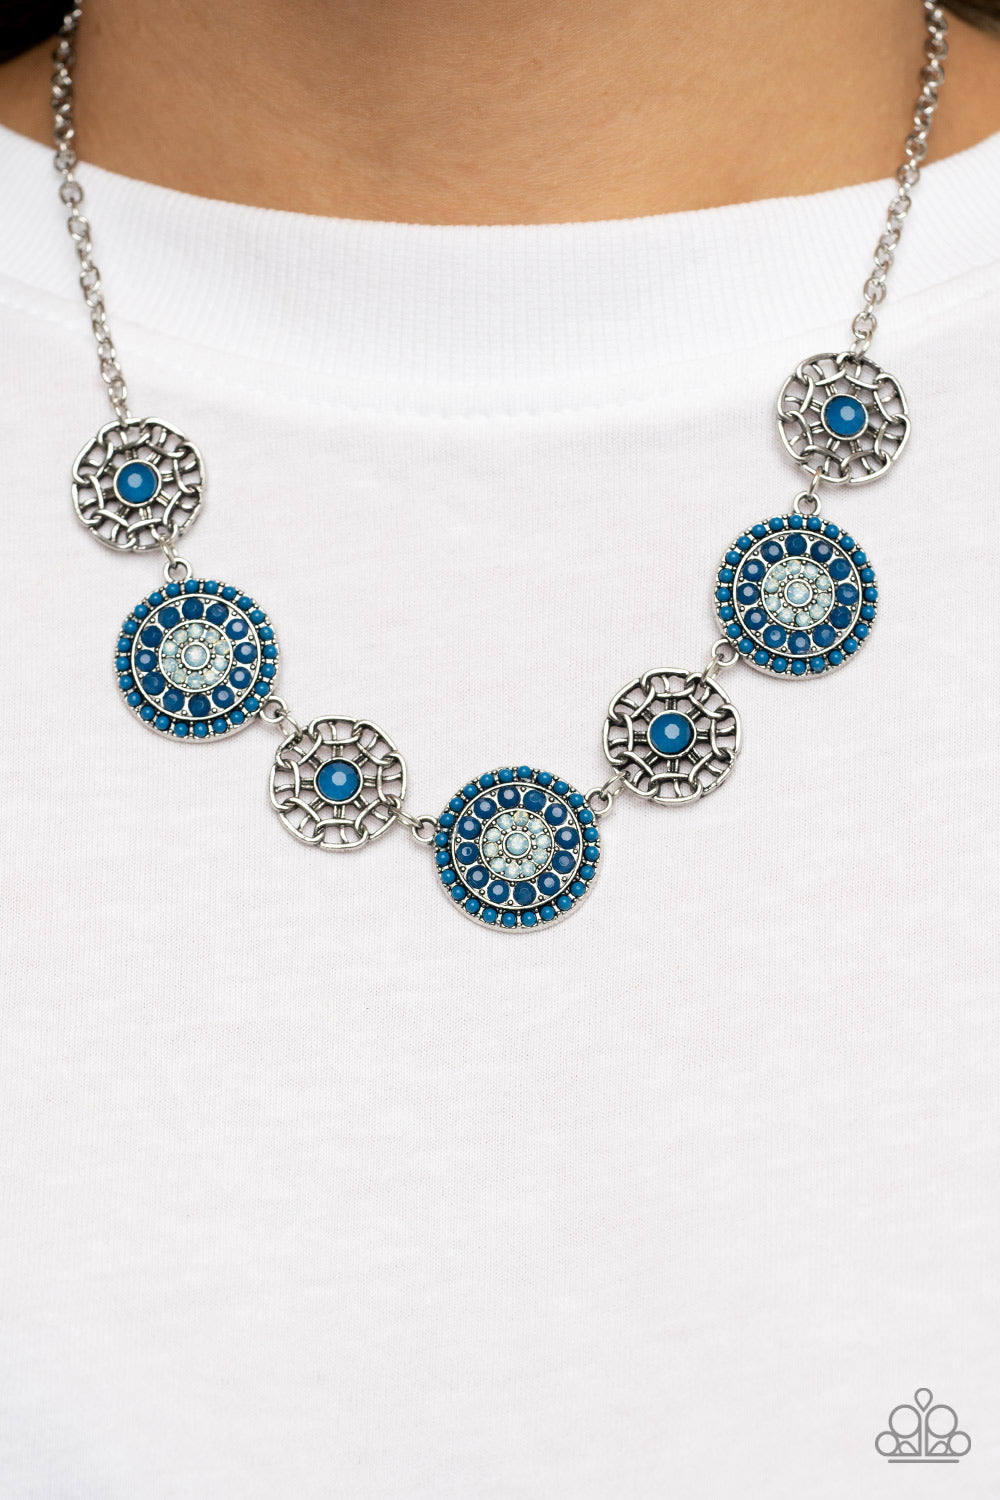 Paparazzi Farmers Market Fashionista - Blue PRE ORDER - $5 Jewelry with Ashley Swint